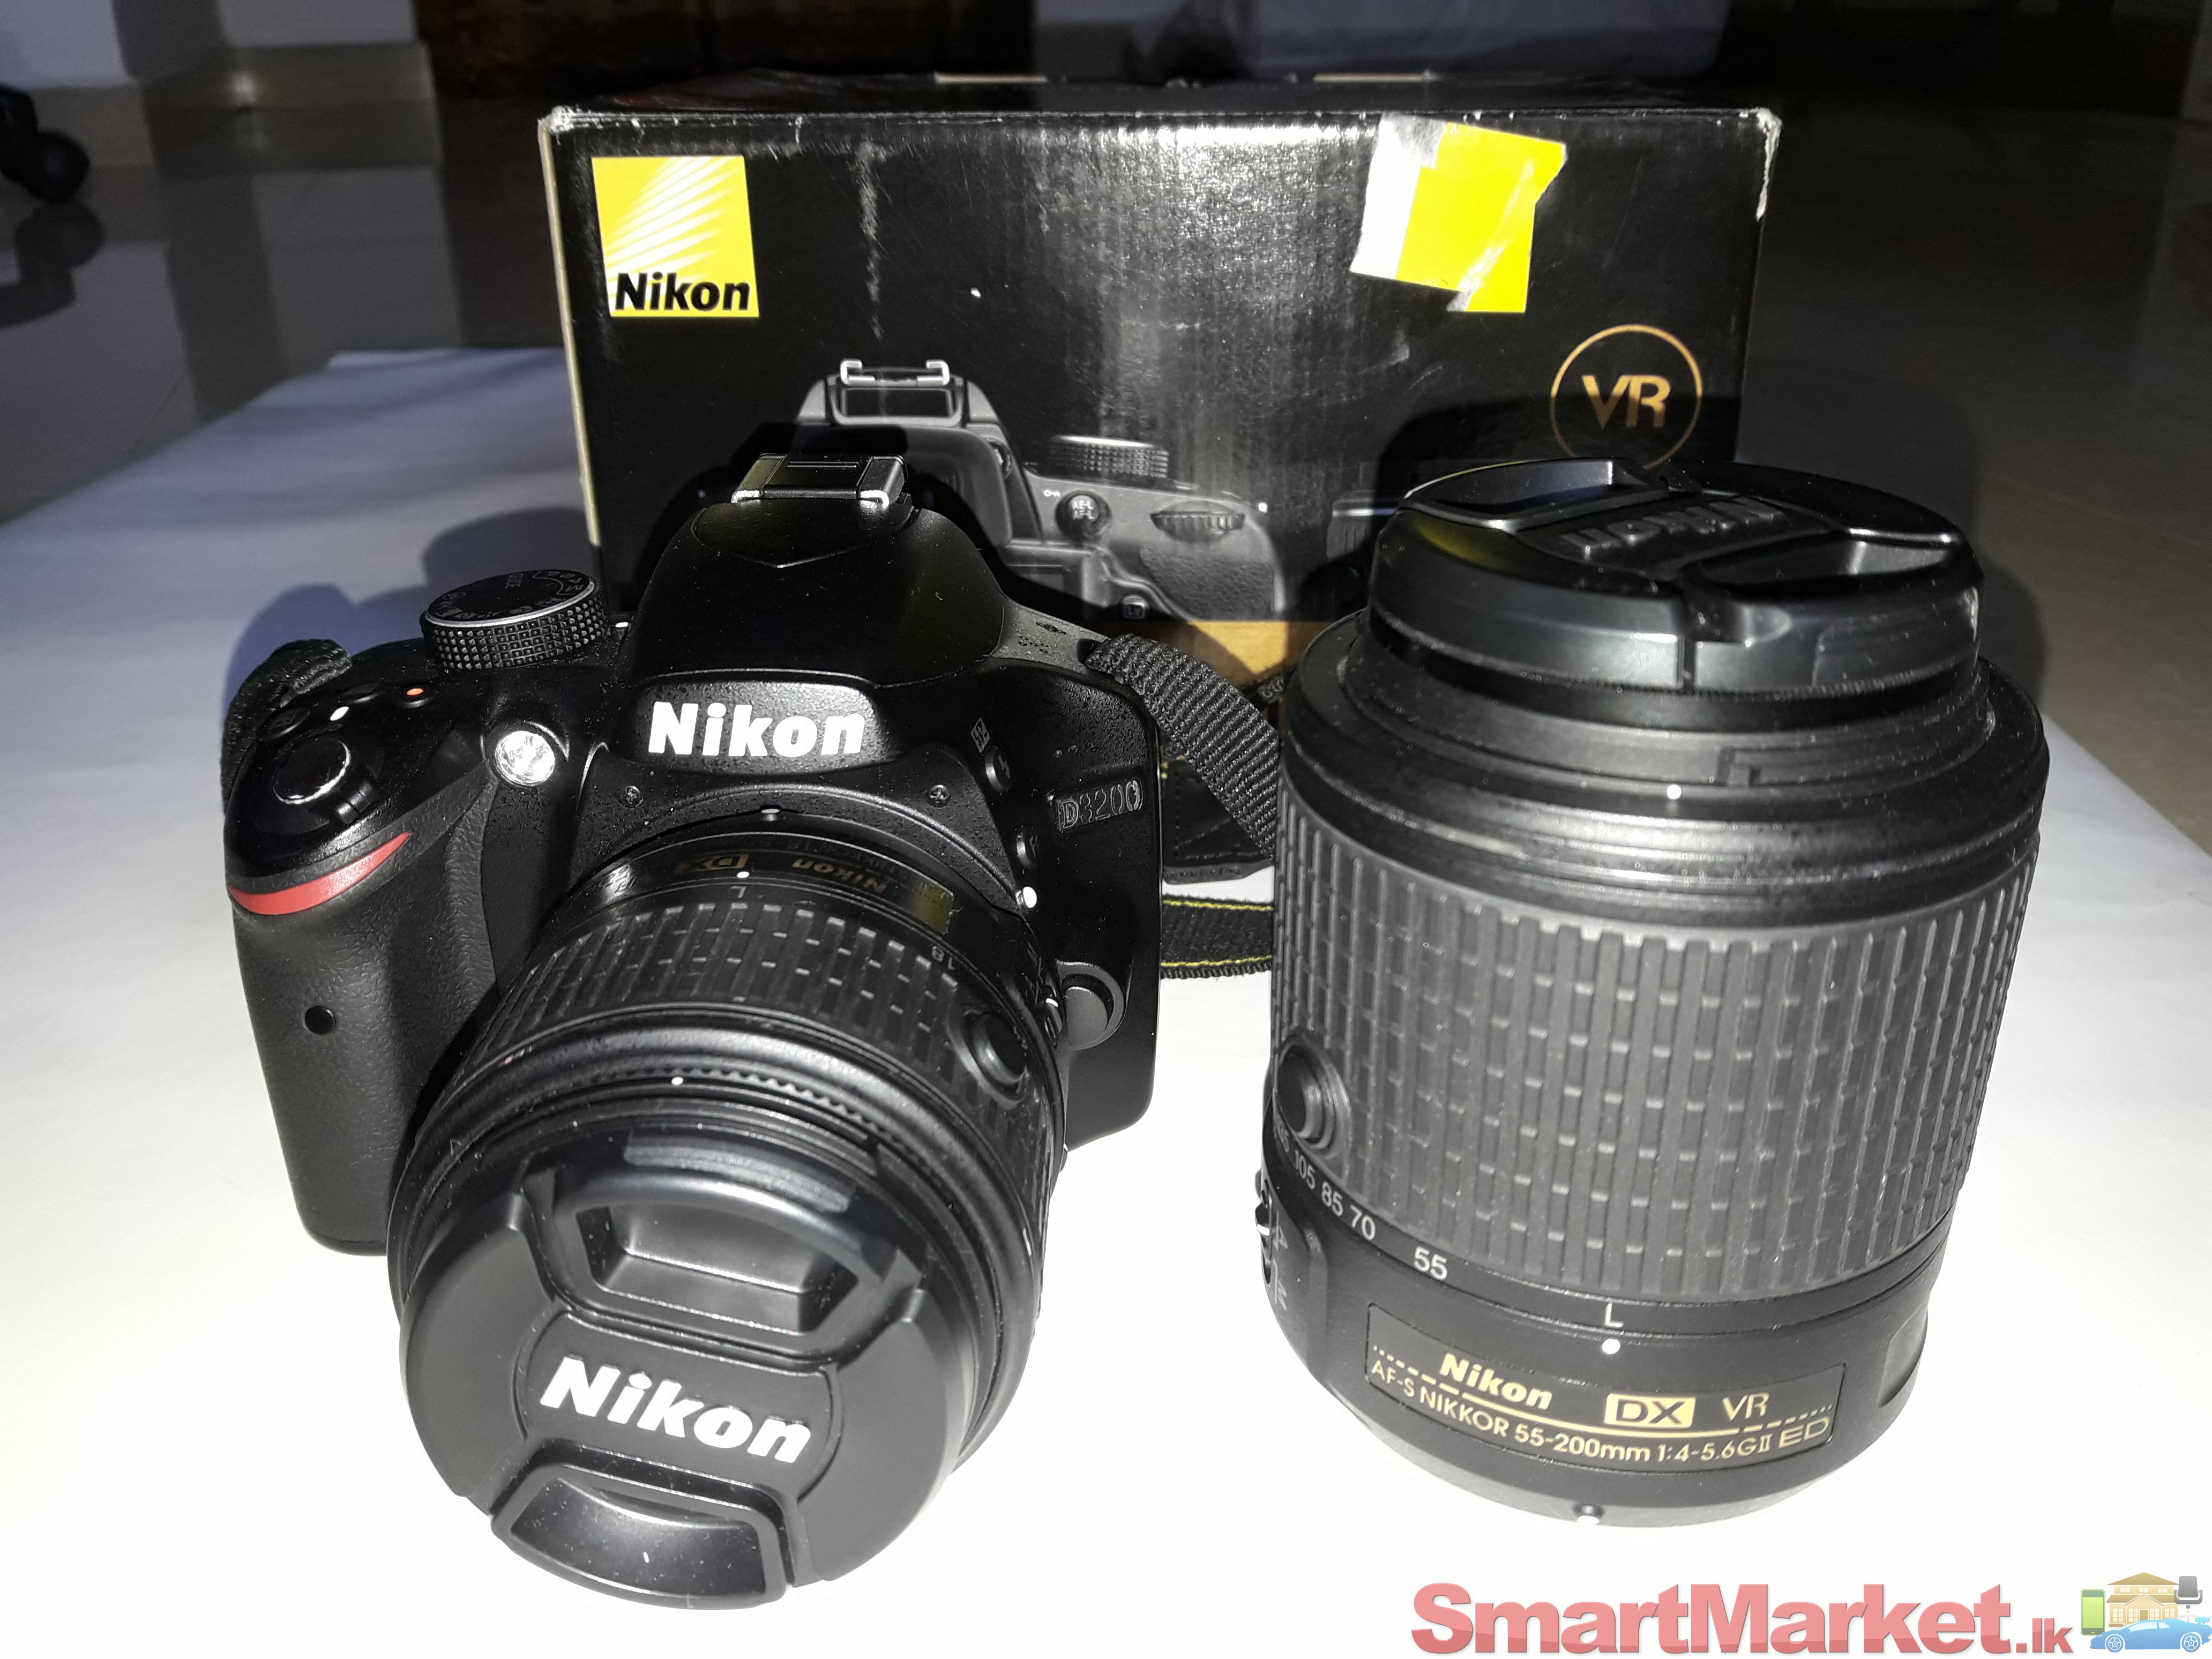 Nikon D3200+18-55mm+55-200mm